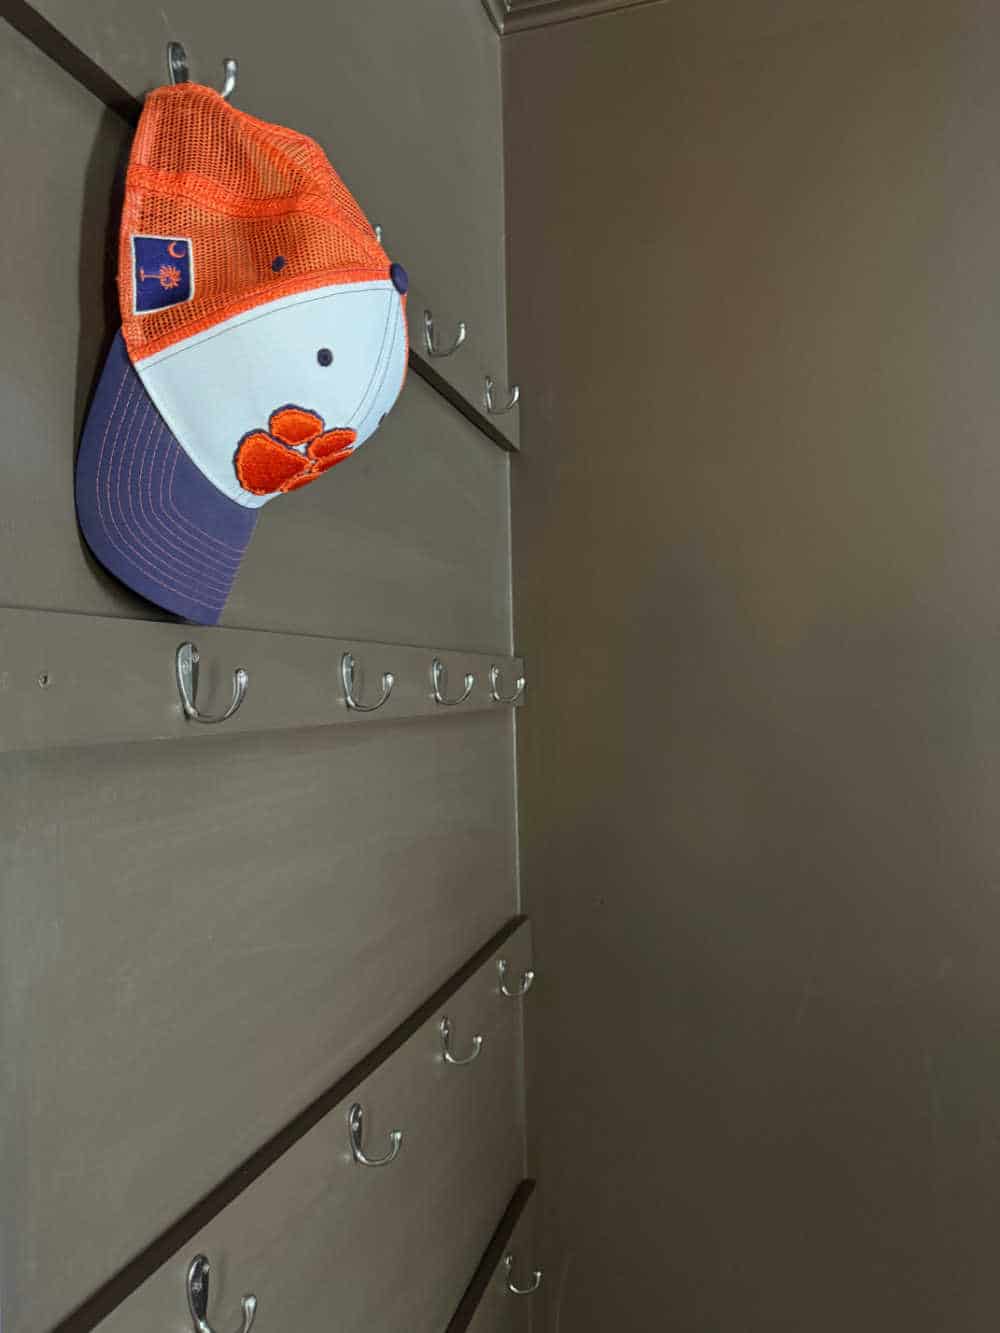 hat on hook organizer hidden display in bedroom